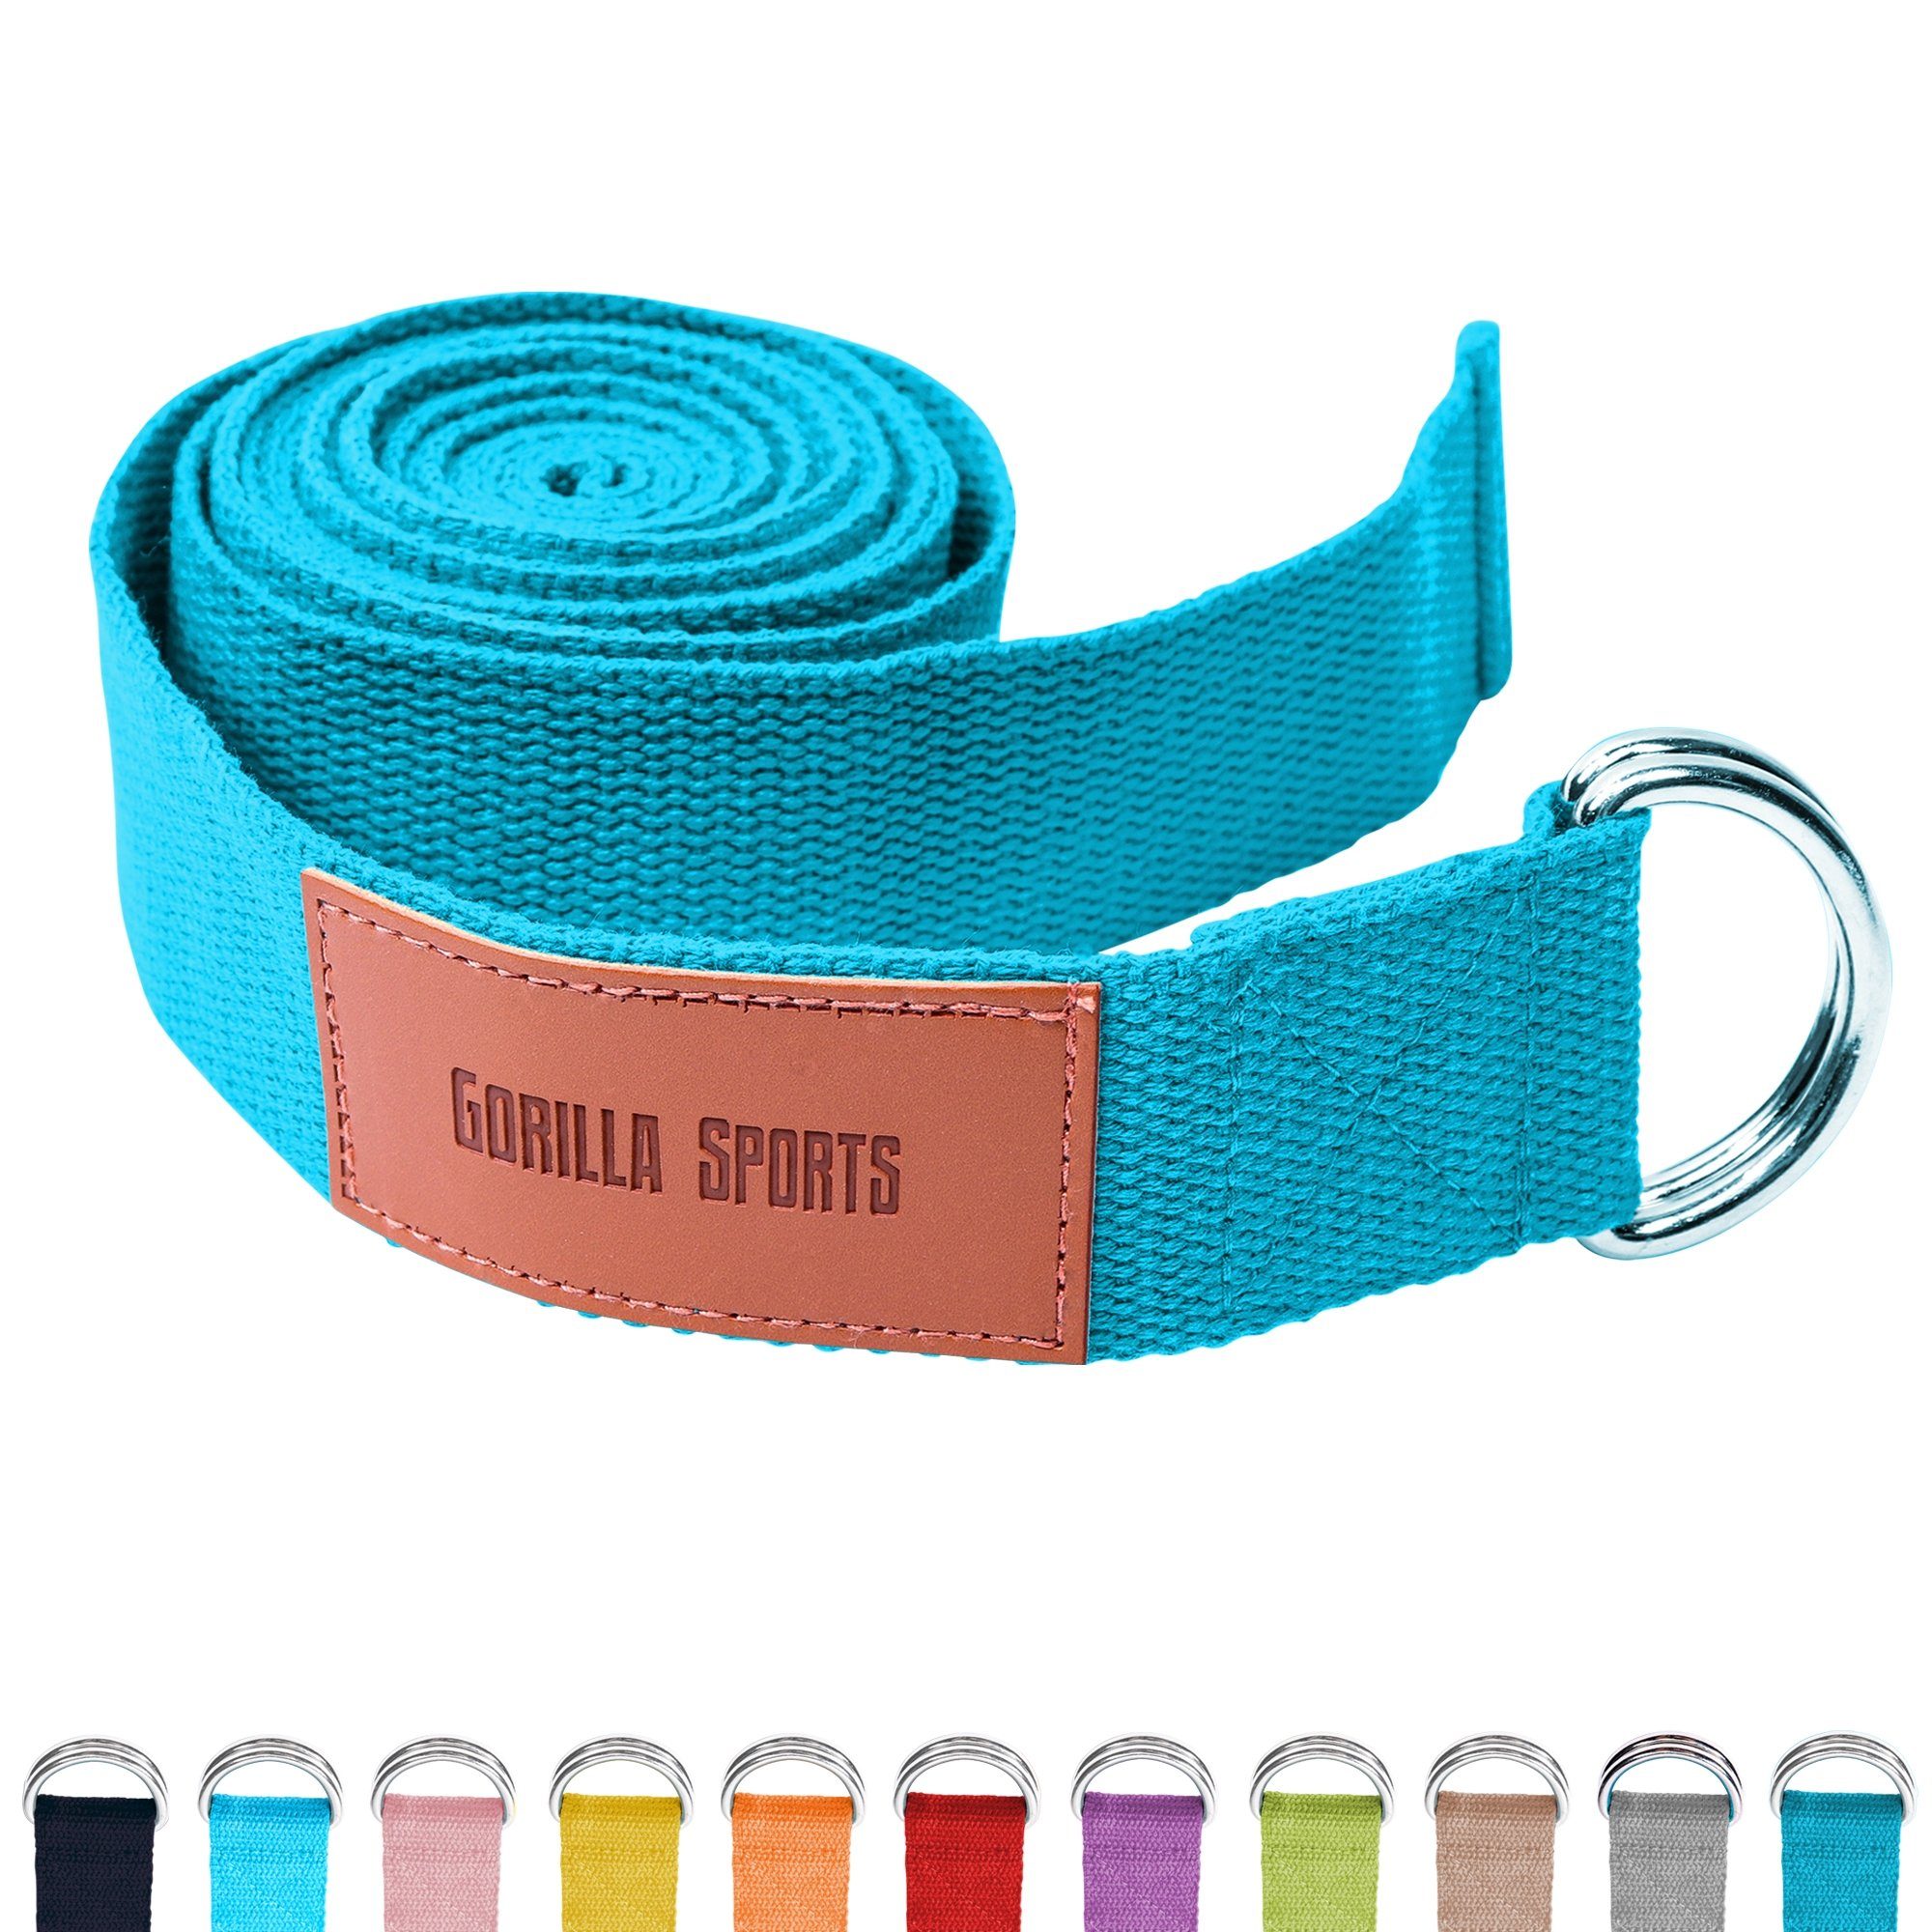 SPORTS Blau Yogagurt Yoga-Gürtel, Metall, Yoga Strap Verschluss aus 100% Baumwolle, mit GORILLA